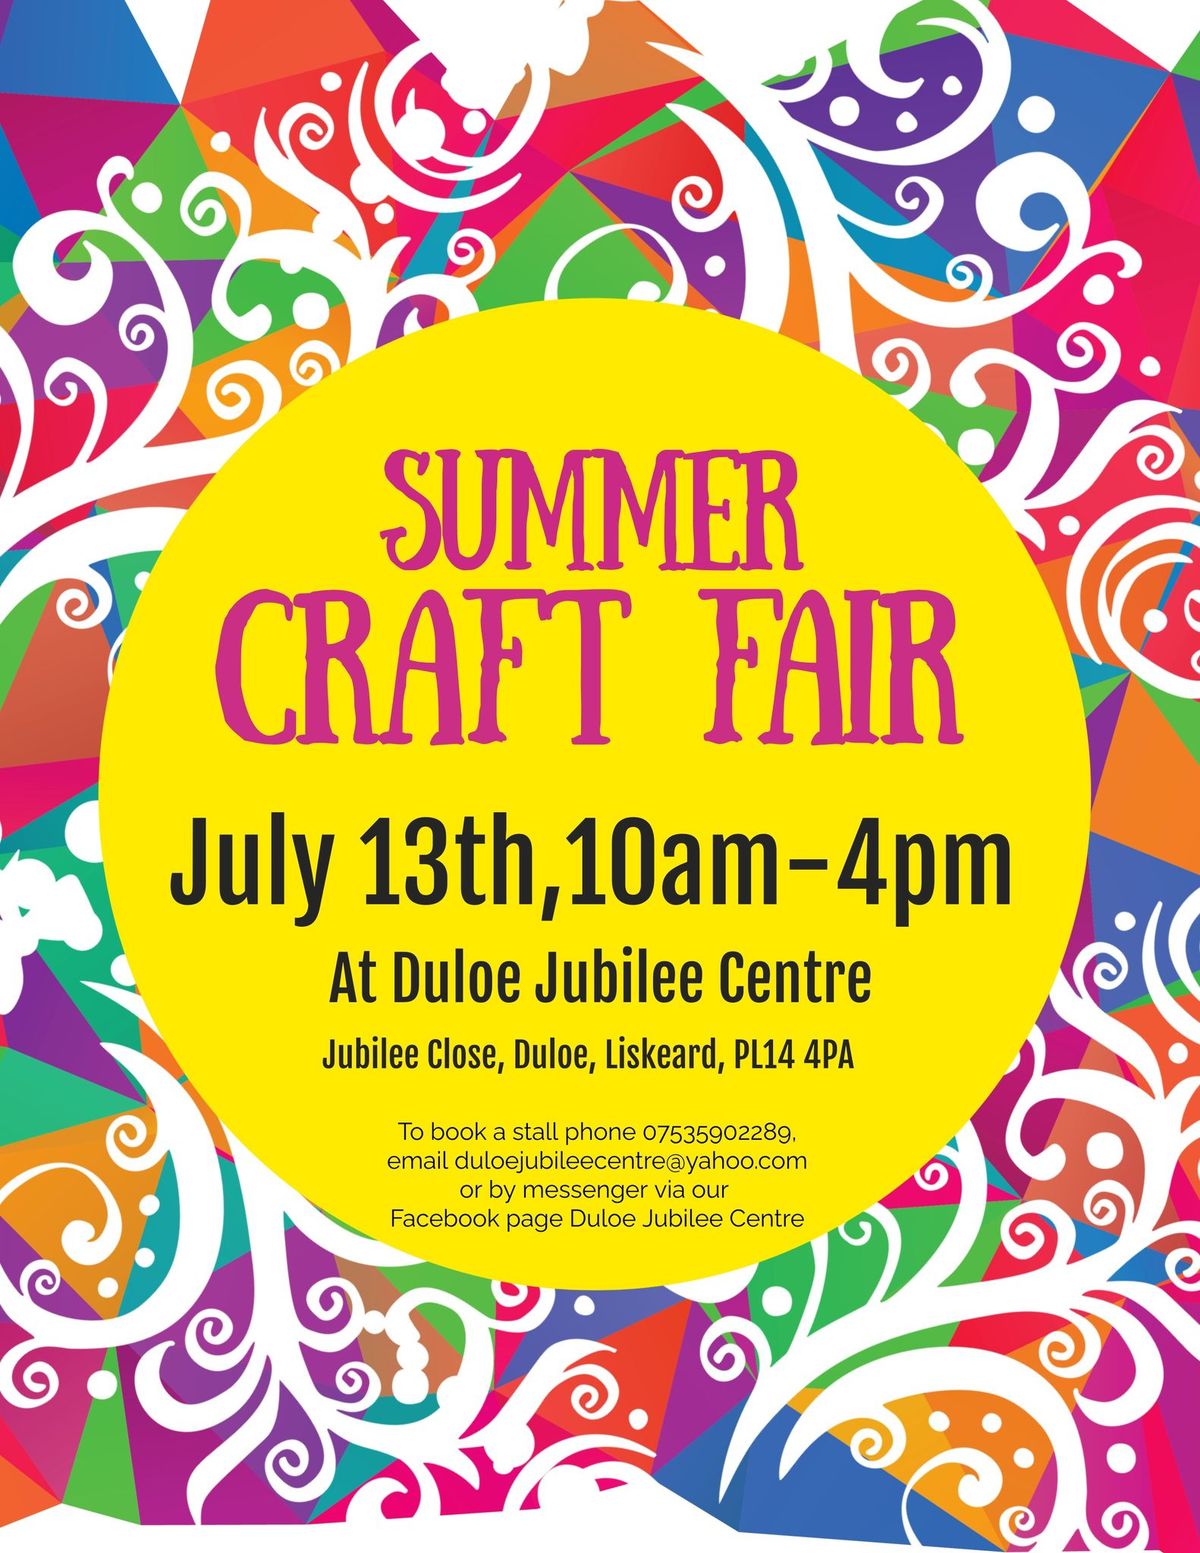 Summer craft fair